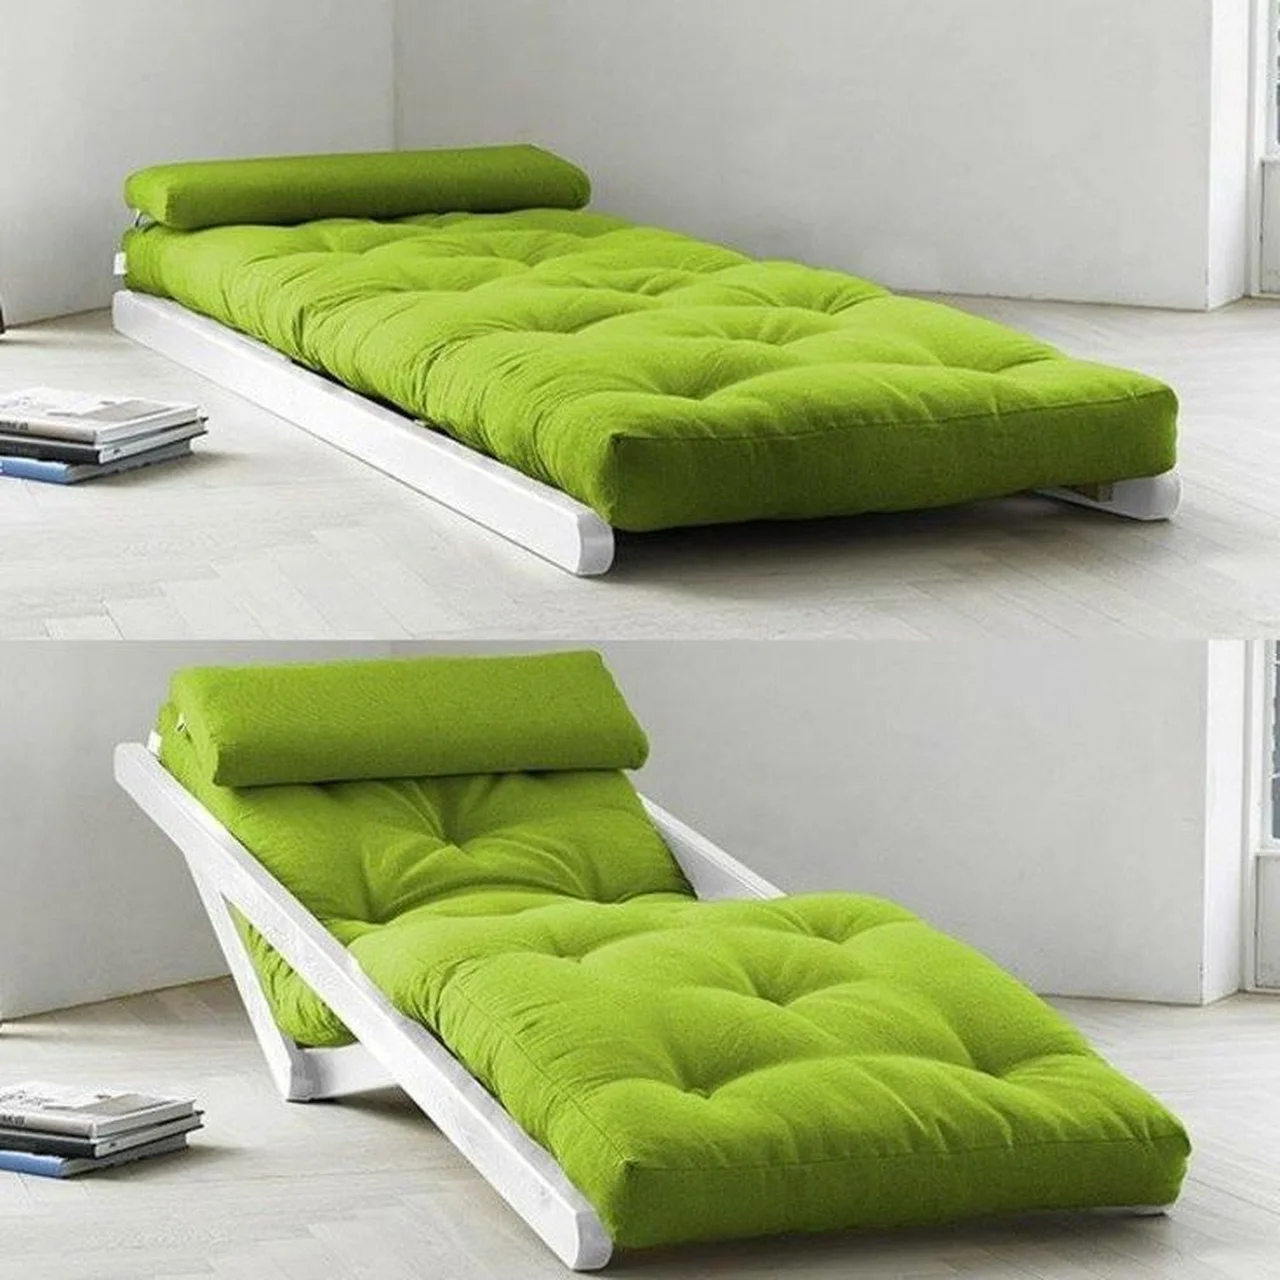 Łóżko i leżak 2w1 :)